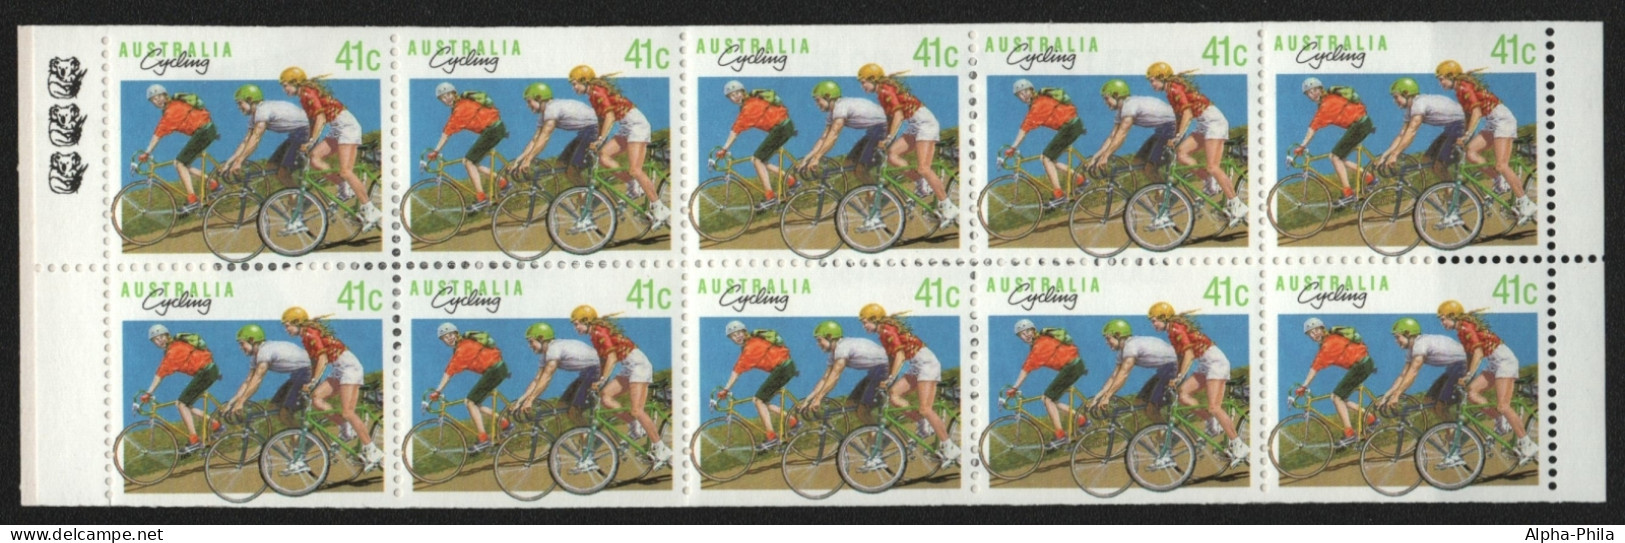 Australien 1989 - Mi-Nr. 1165 D ** - MNH - MH 0-63 - Radsport - Postzegelboekjes